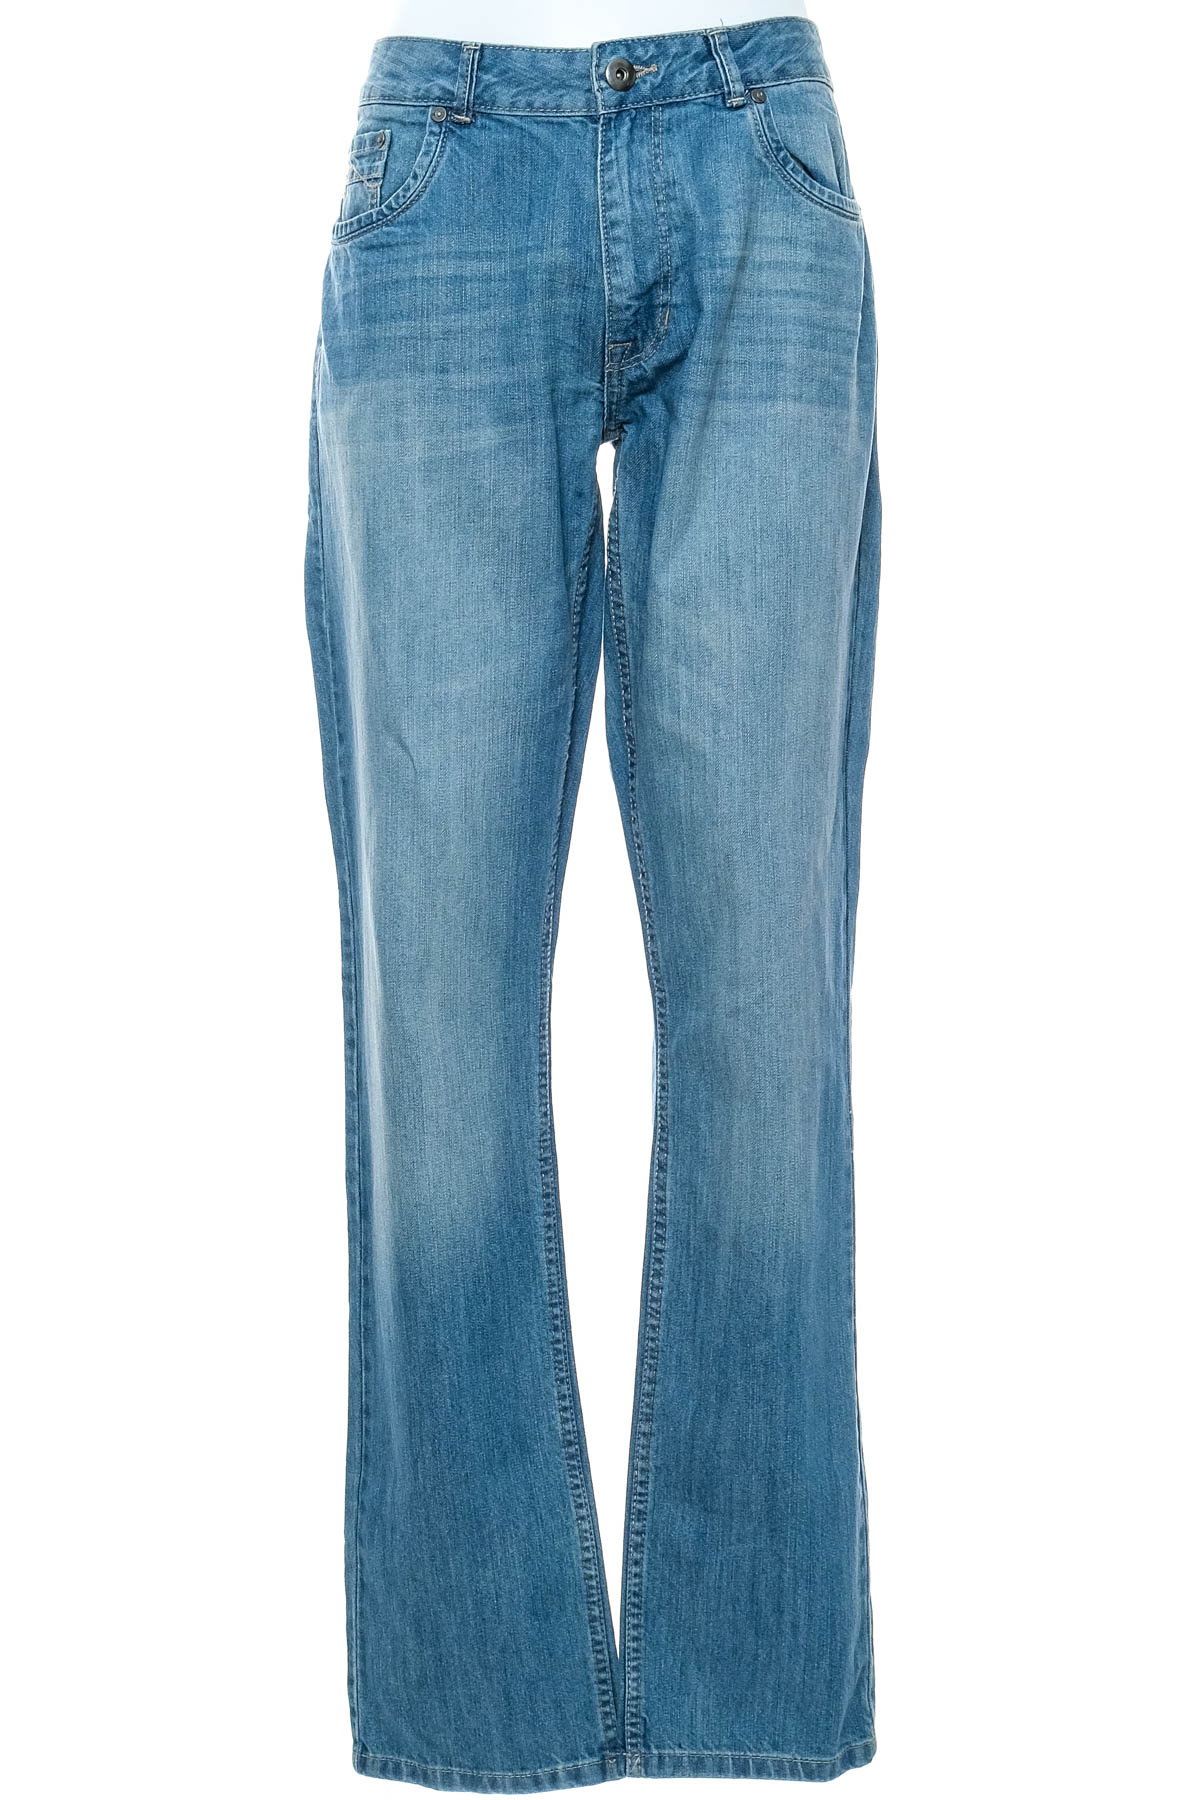 Men's jeans - Charles Vogele - 0